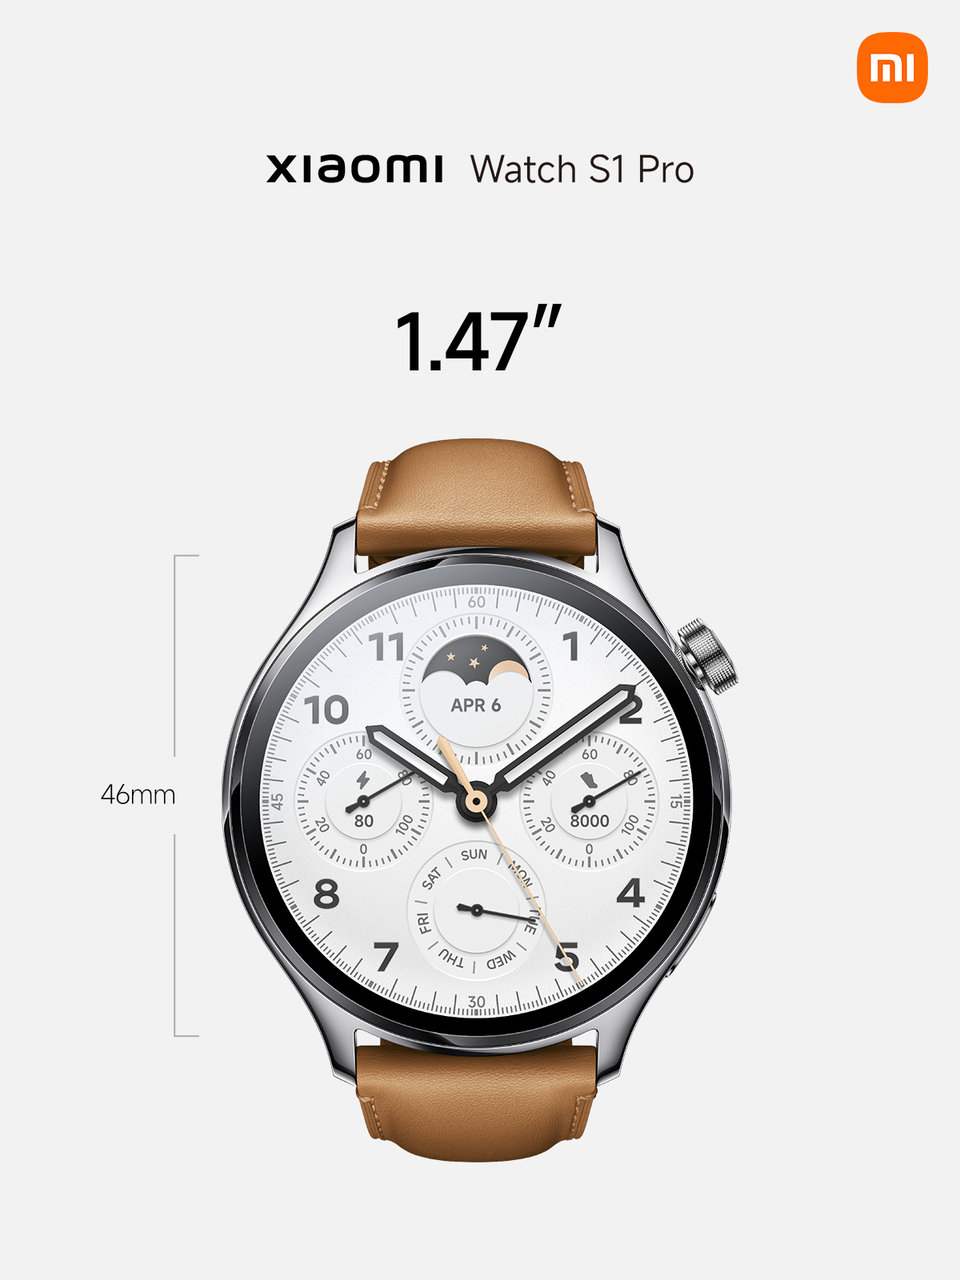 Xiaomi Watch S1 Pro size